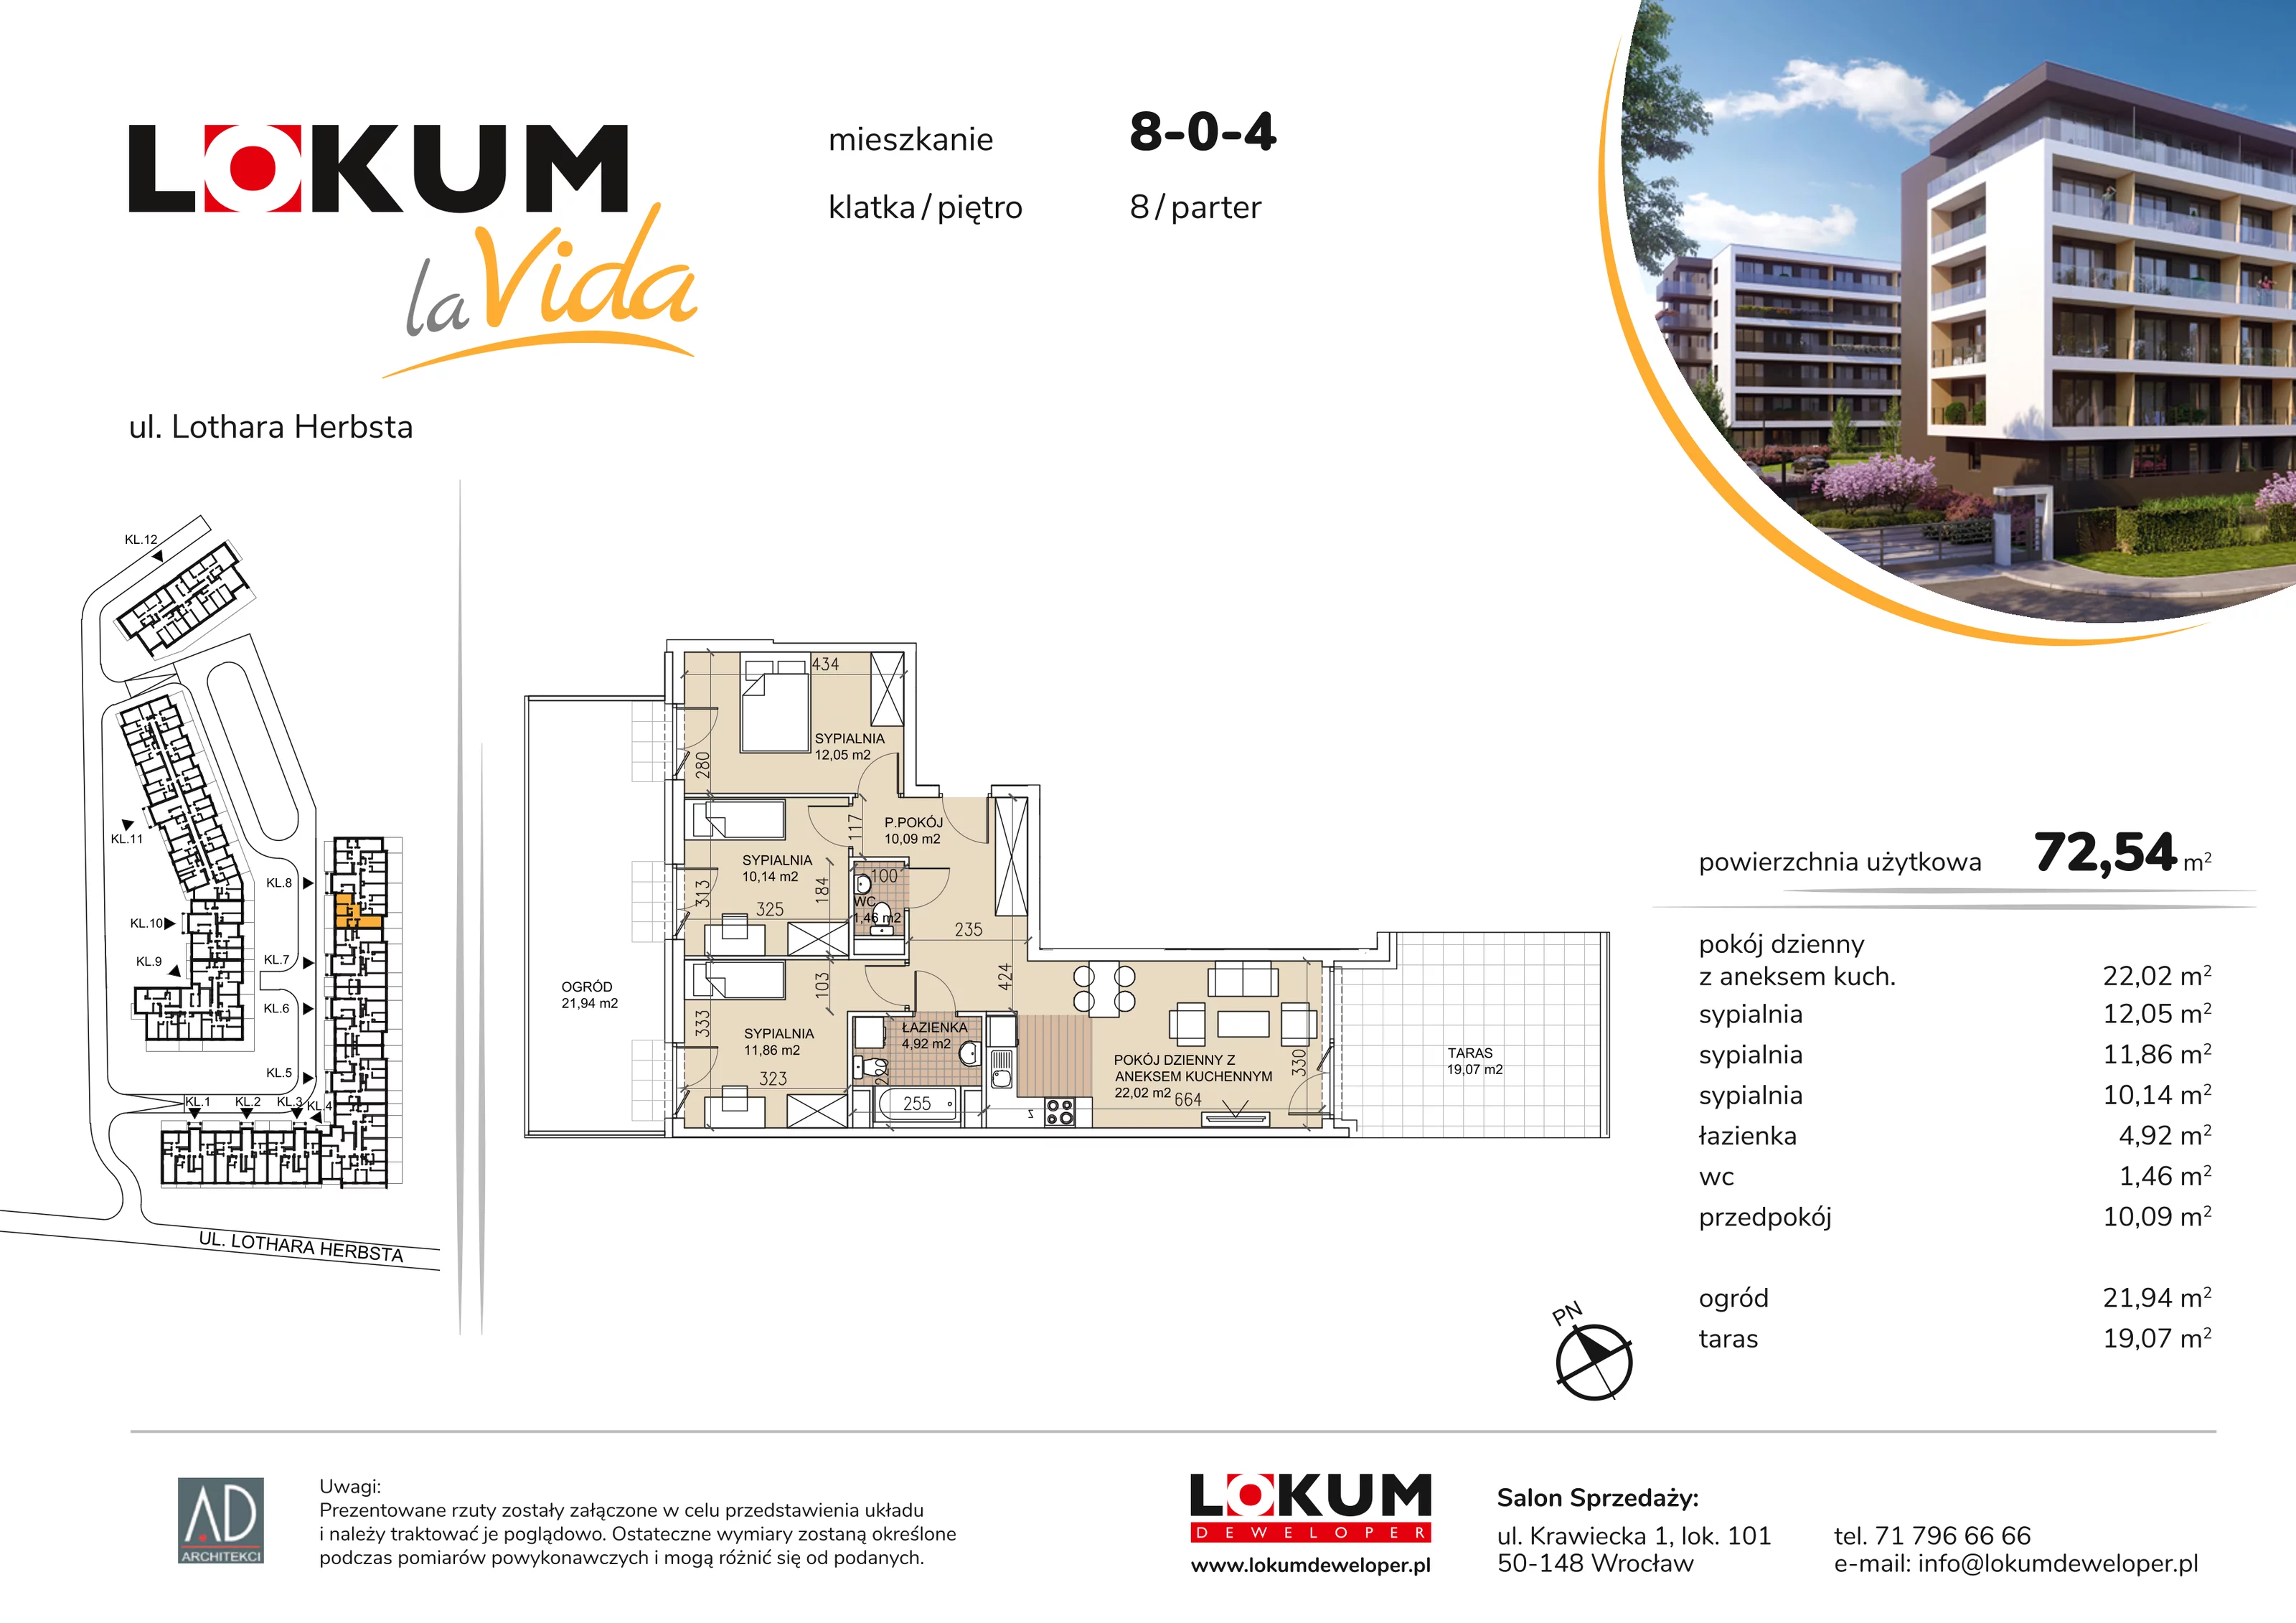 Mieszkanie 72,54 m², parter, oferta nr 8-0-4, Lokum la Vida, Wrocław, Sołtysowice, ul. Lothara Herbsta